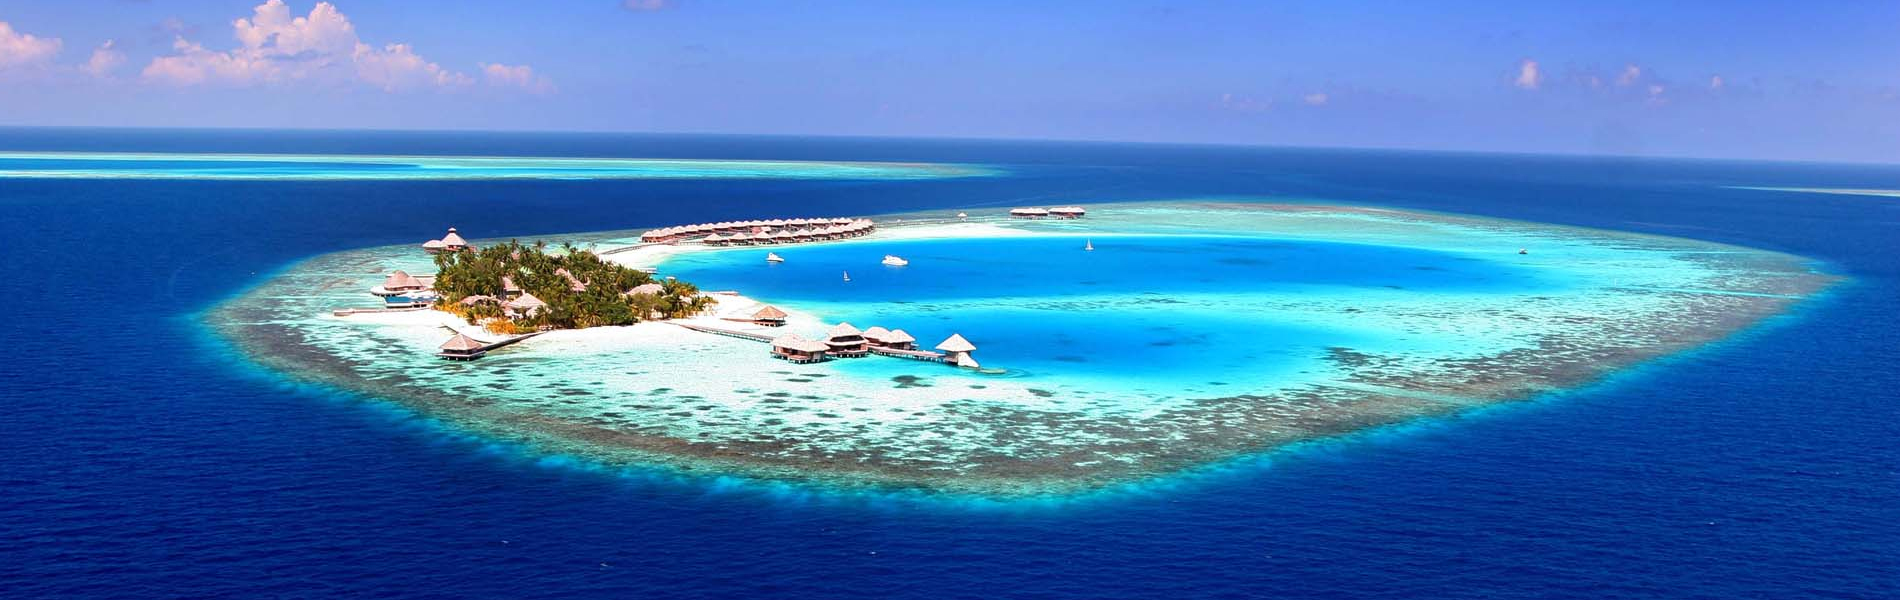 tourist places of maldives